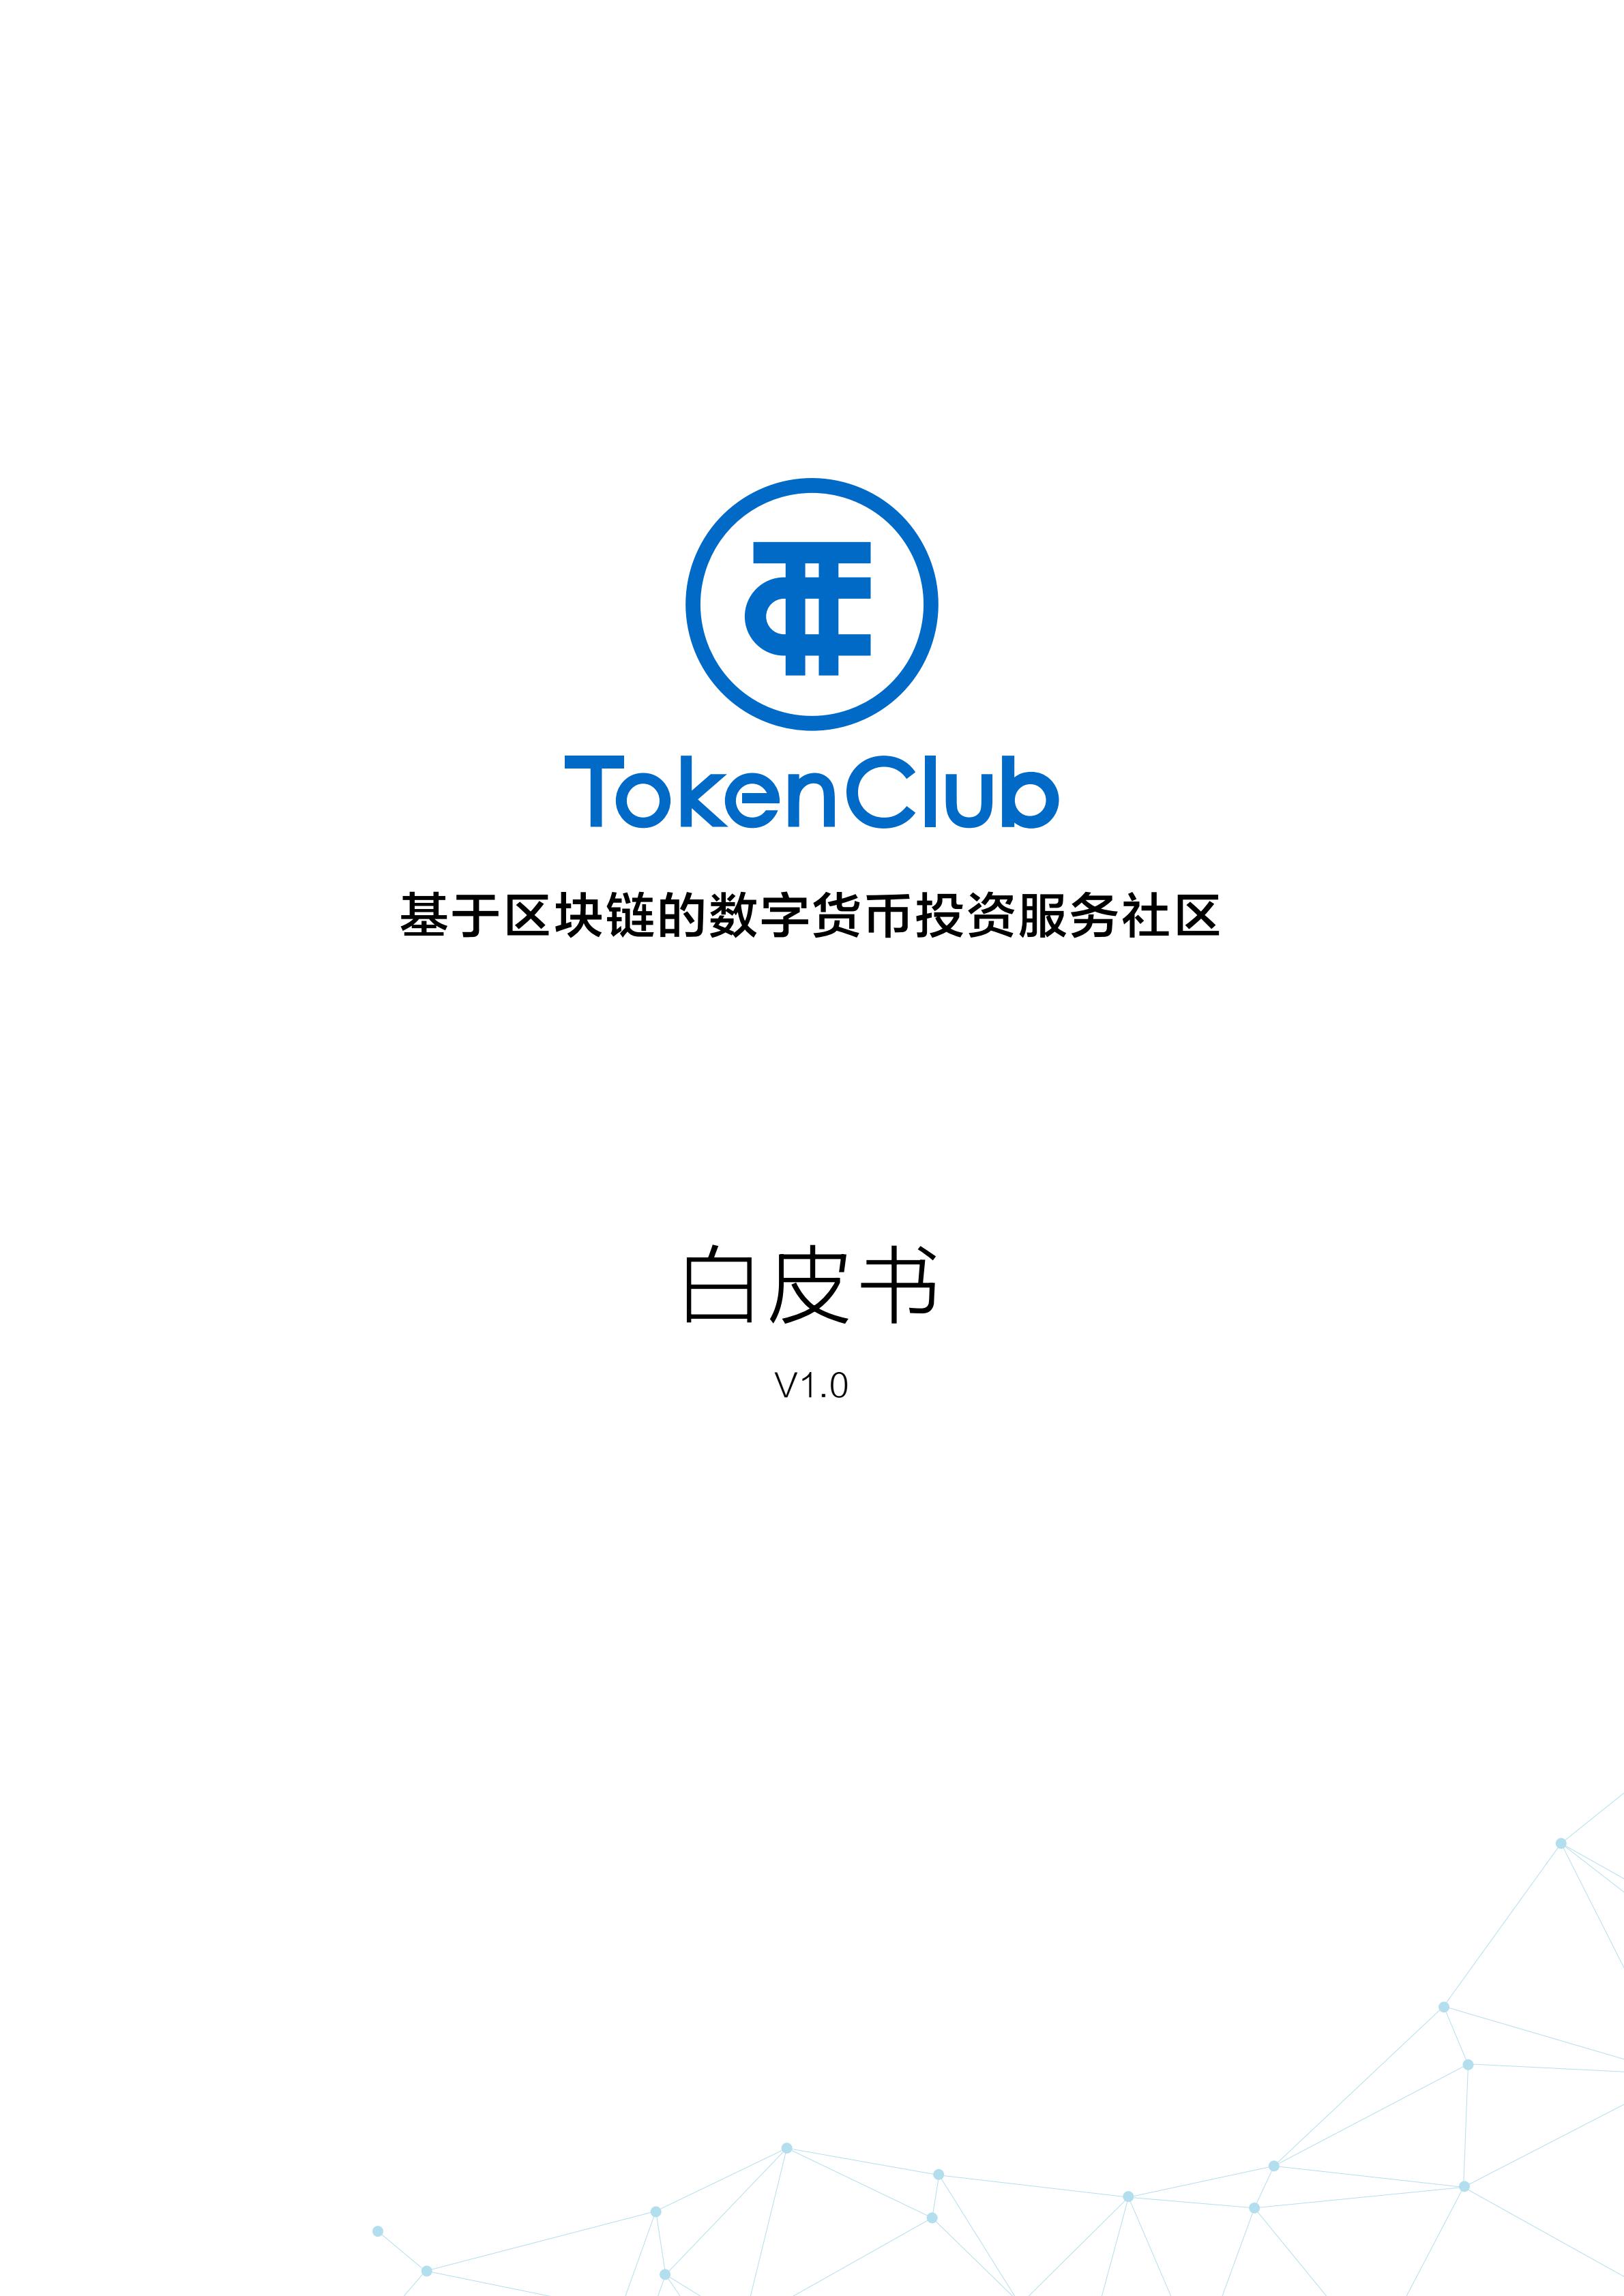 TCT_TokenClub_c_00.jpg